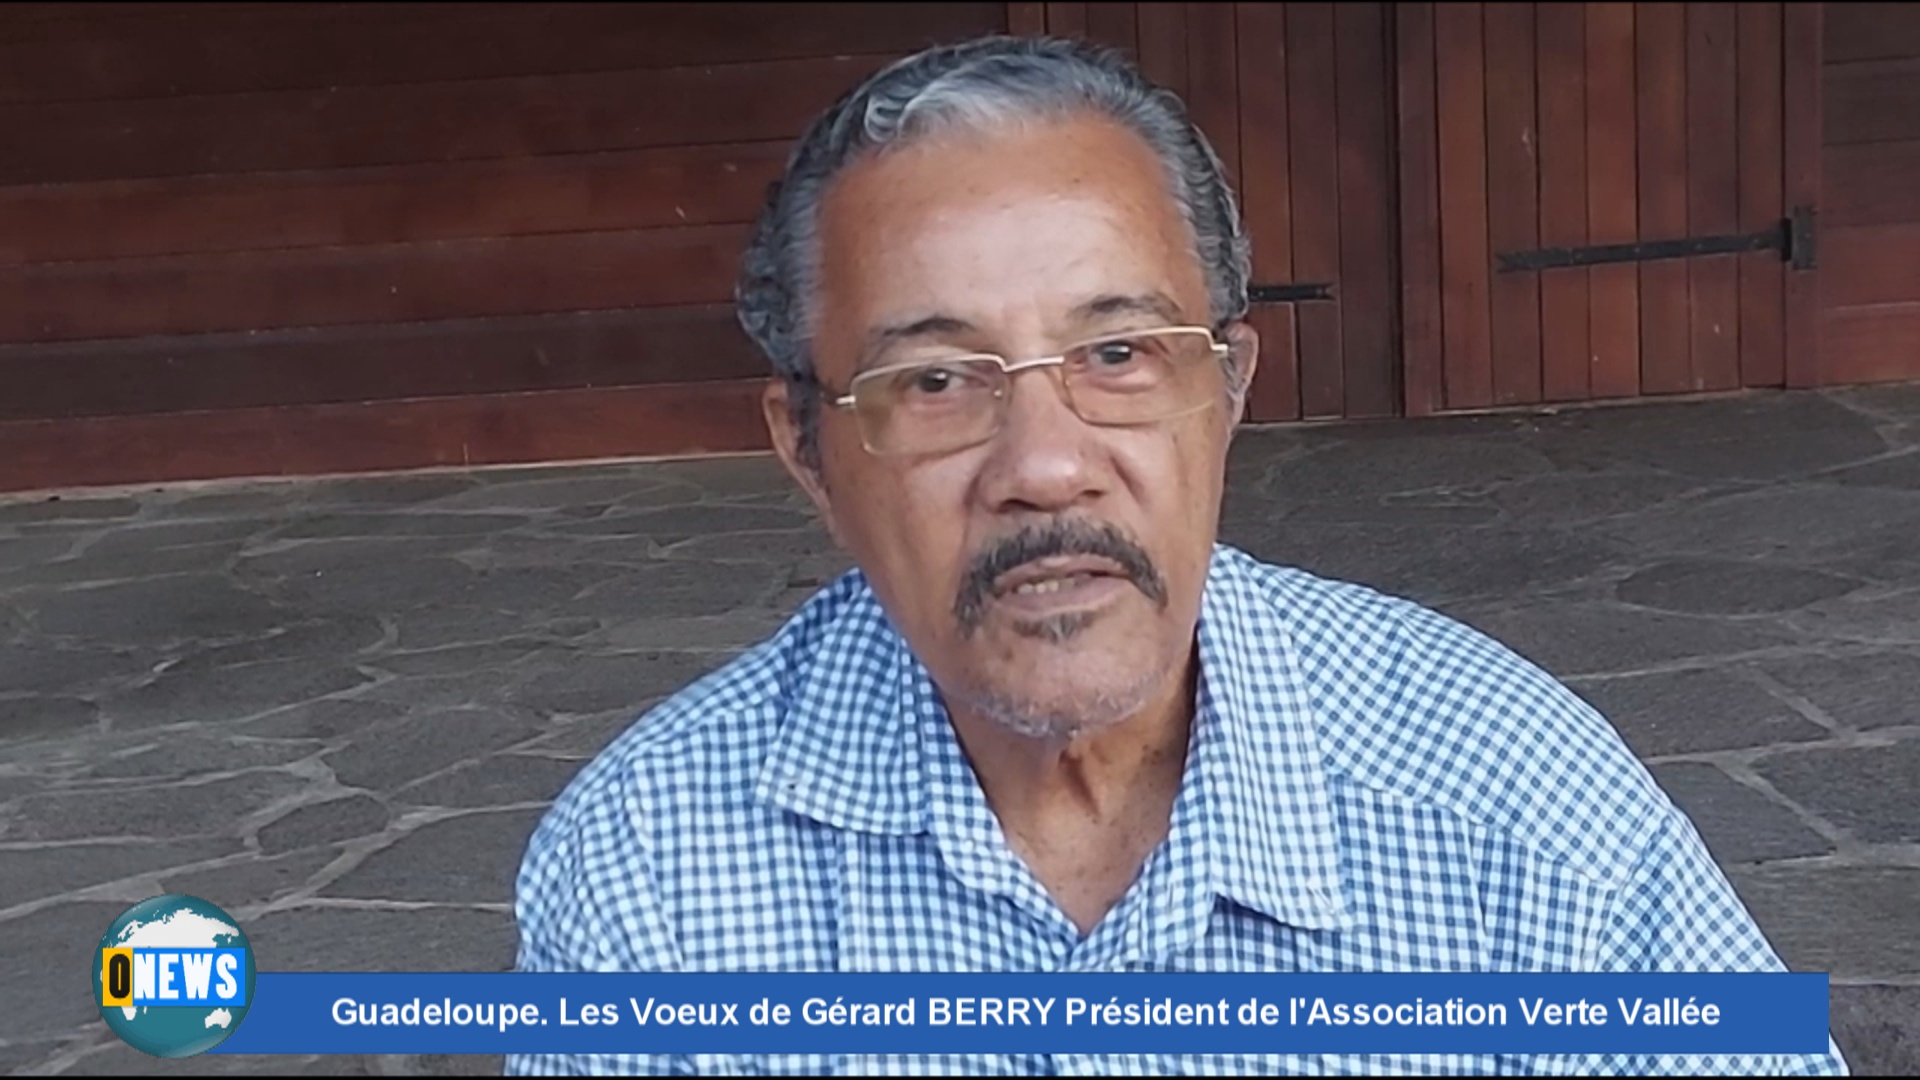 [Vidéo] Onews Guadeloupe. Les Voeux de Gérard BERRY Président de l’Association Verte Vallée